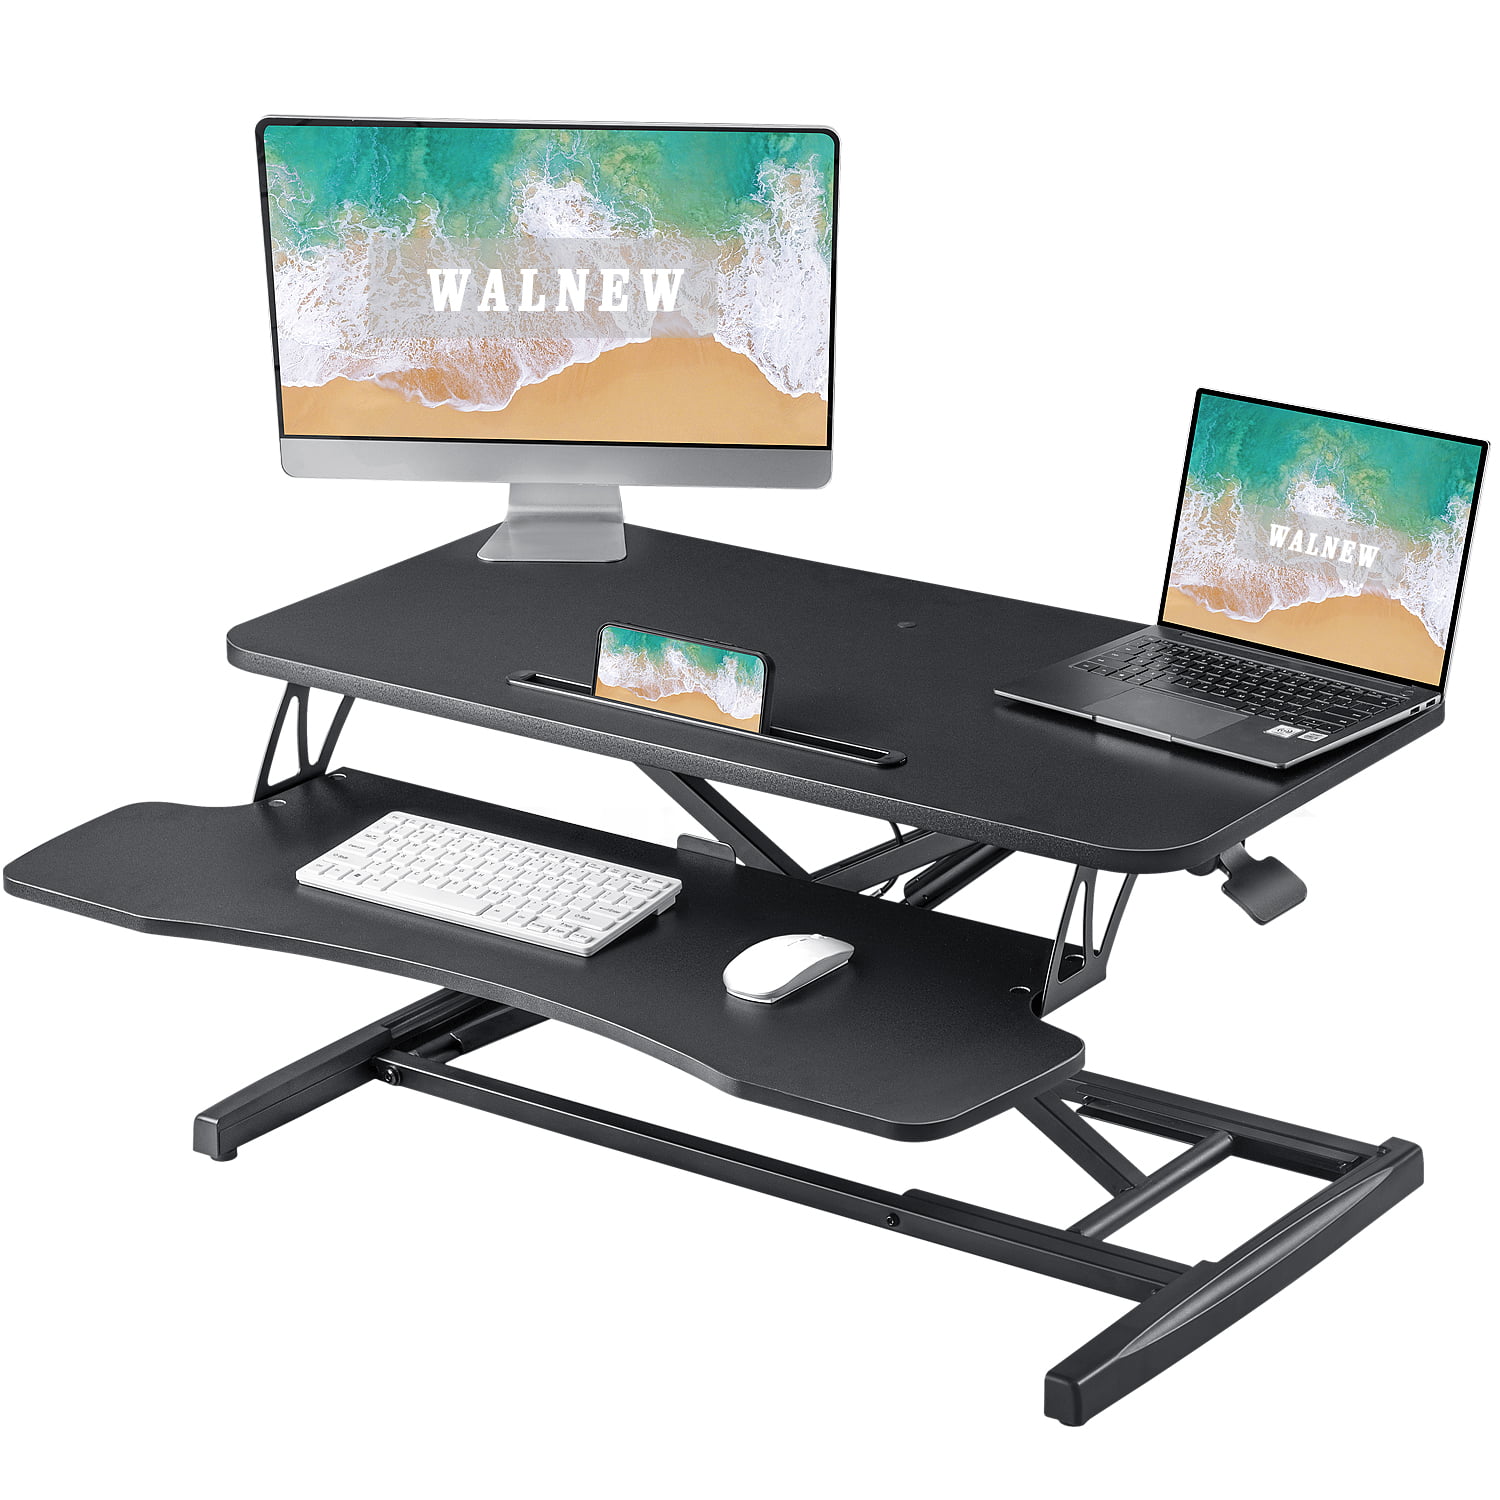 Ergonomic Height Adjustable Standing Desk Sit Stand Desk Desk Top Desk Riser 